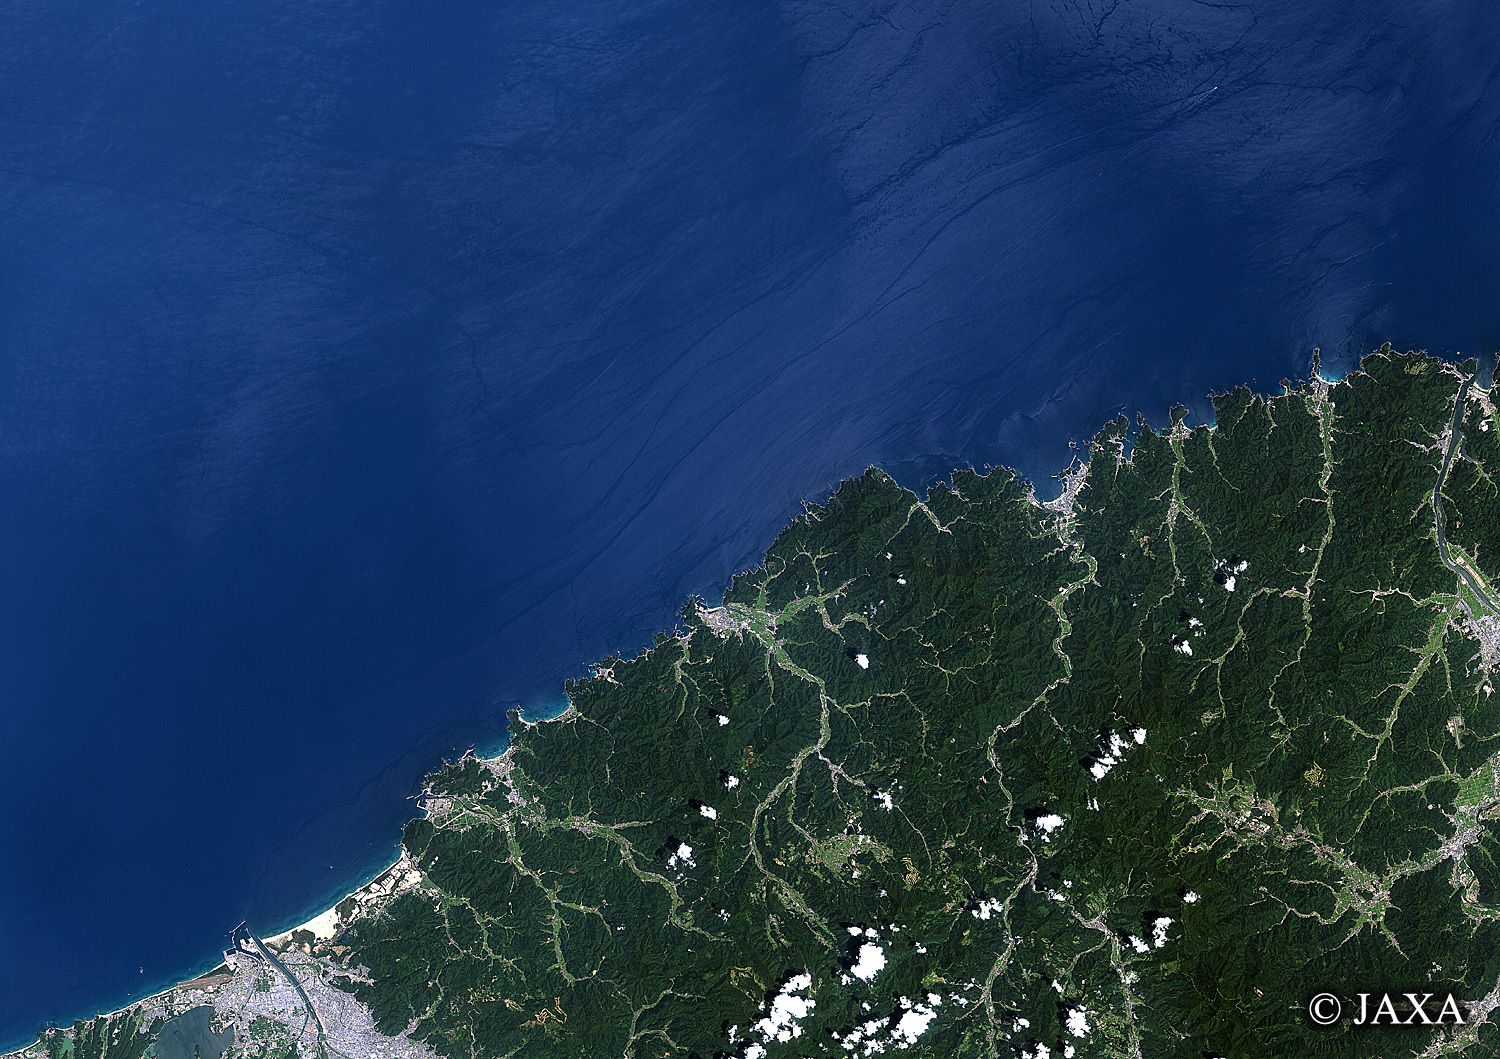 だいちから見た日本の都市 山陰海岸国立公園:衛星画像